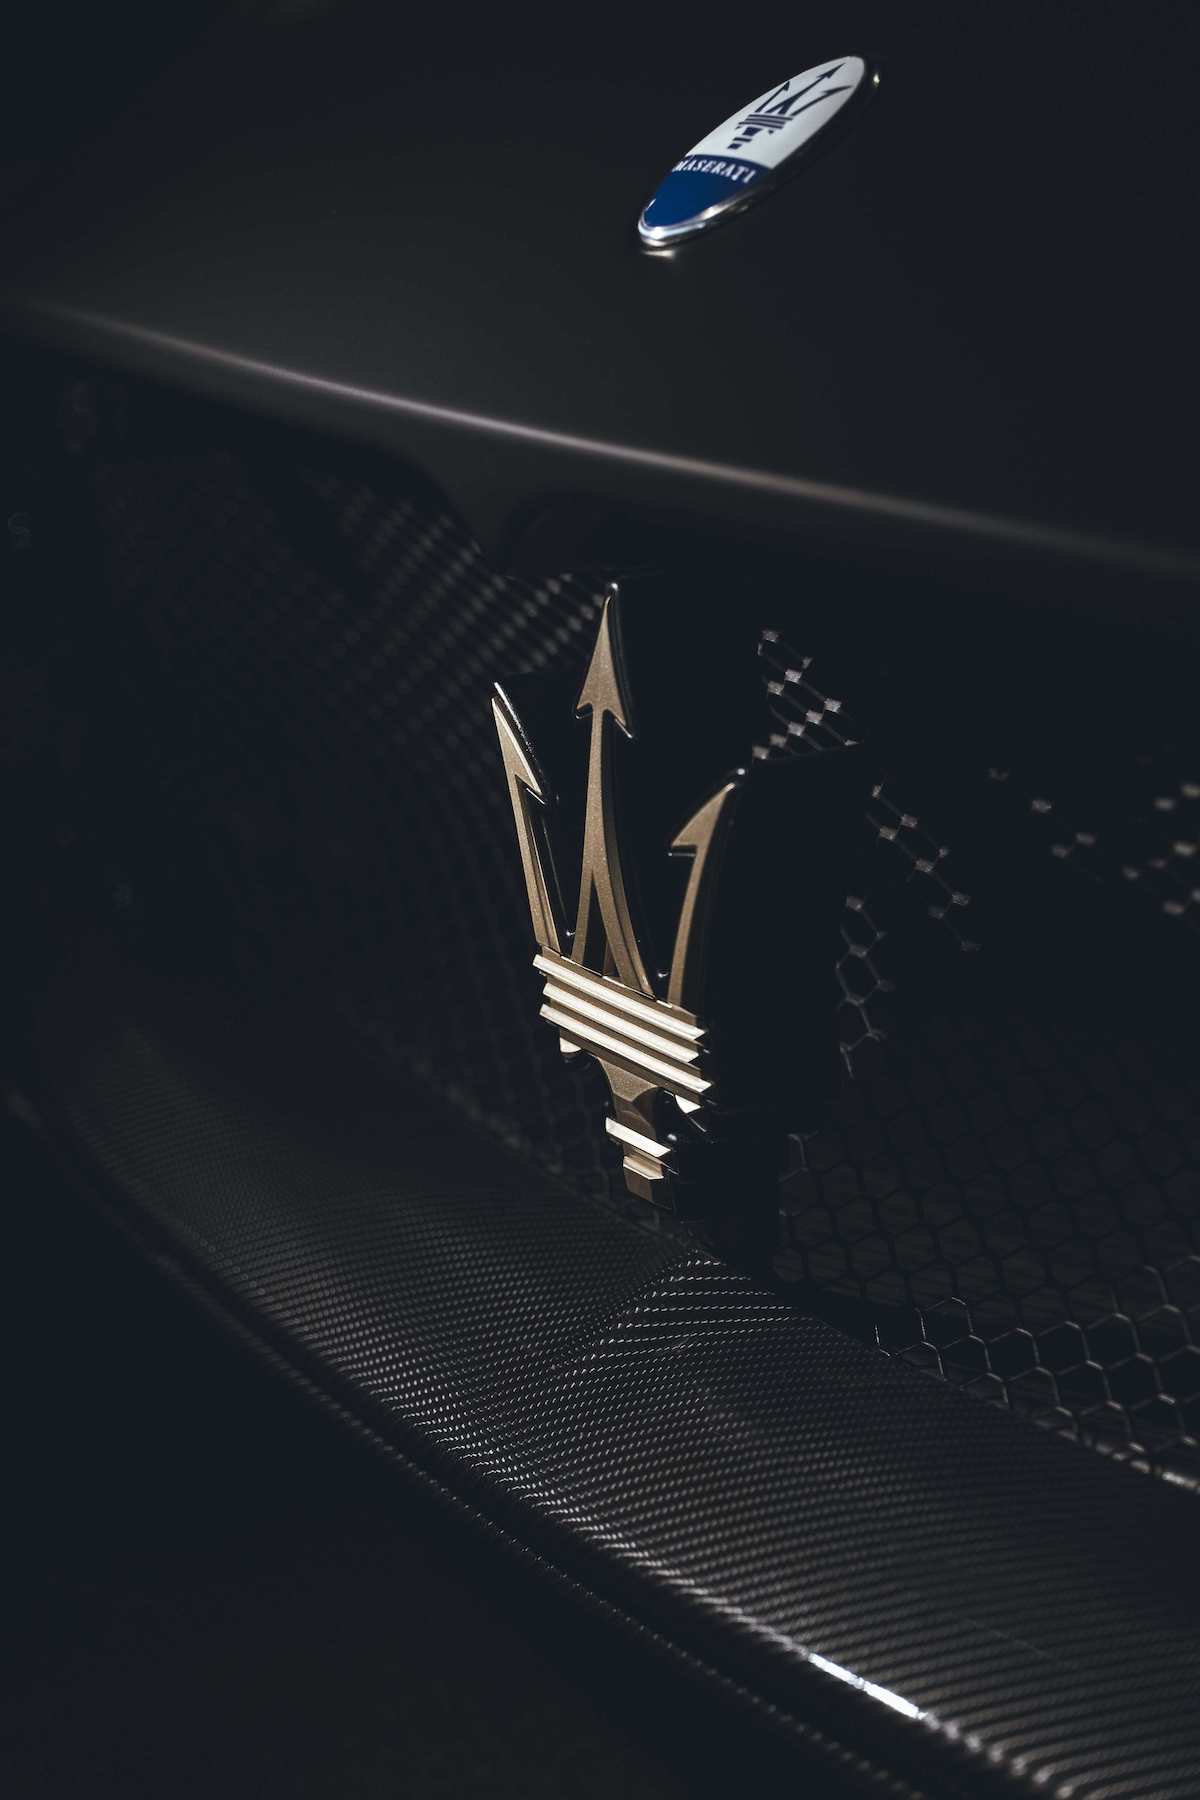 圖10- MC20 Notte 限量版車輛在夜幕之中隱隱閃爍的白金光芒，為三叉戟輝煌的賽車傳奇驚艷點綴.jpg